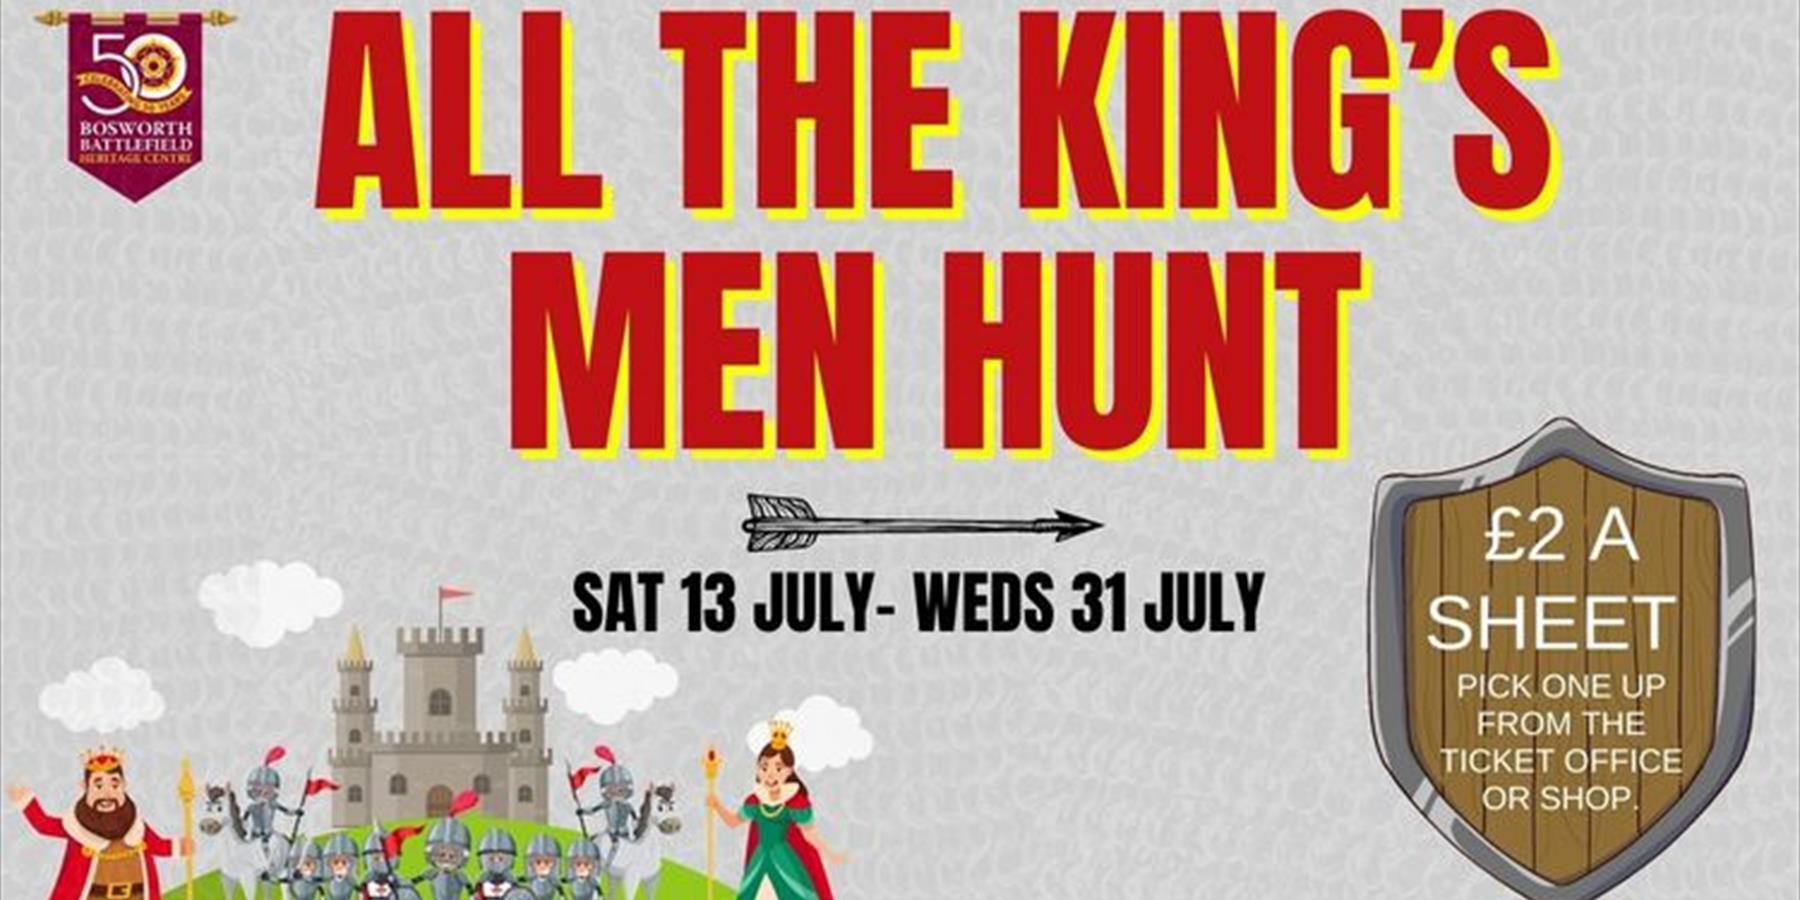 All the King's Men Hunt